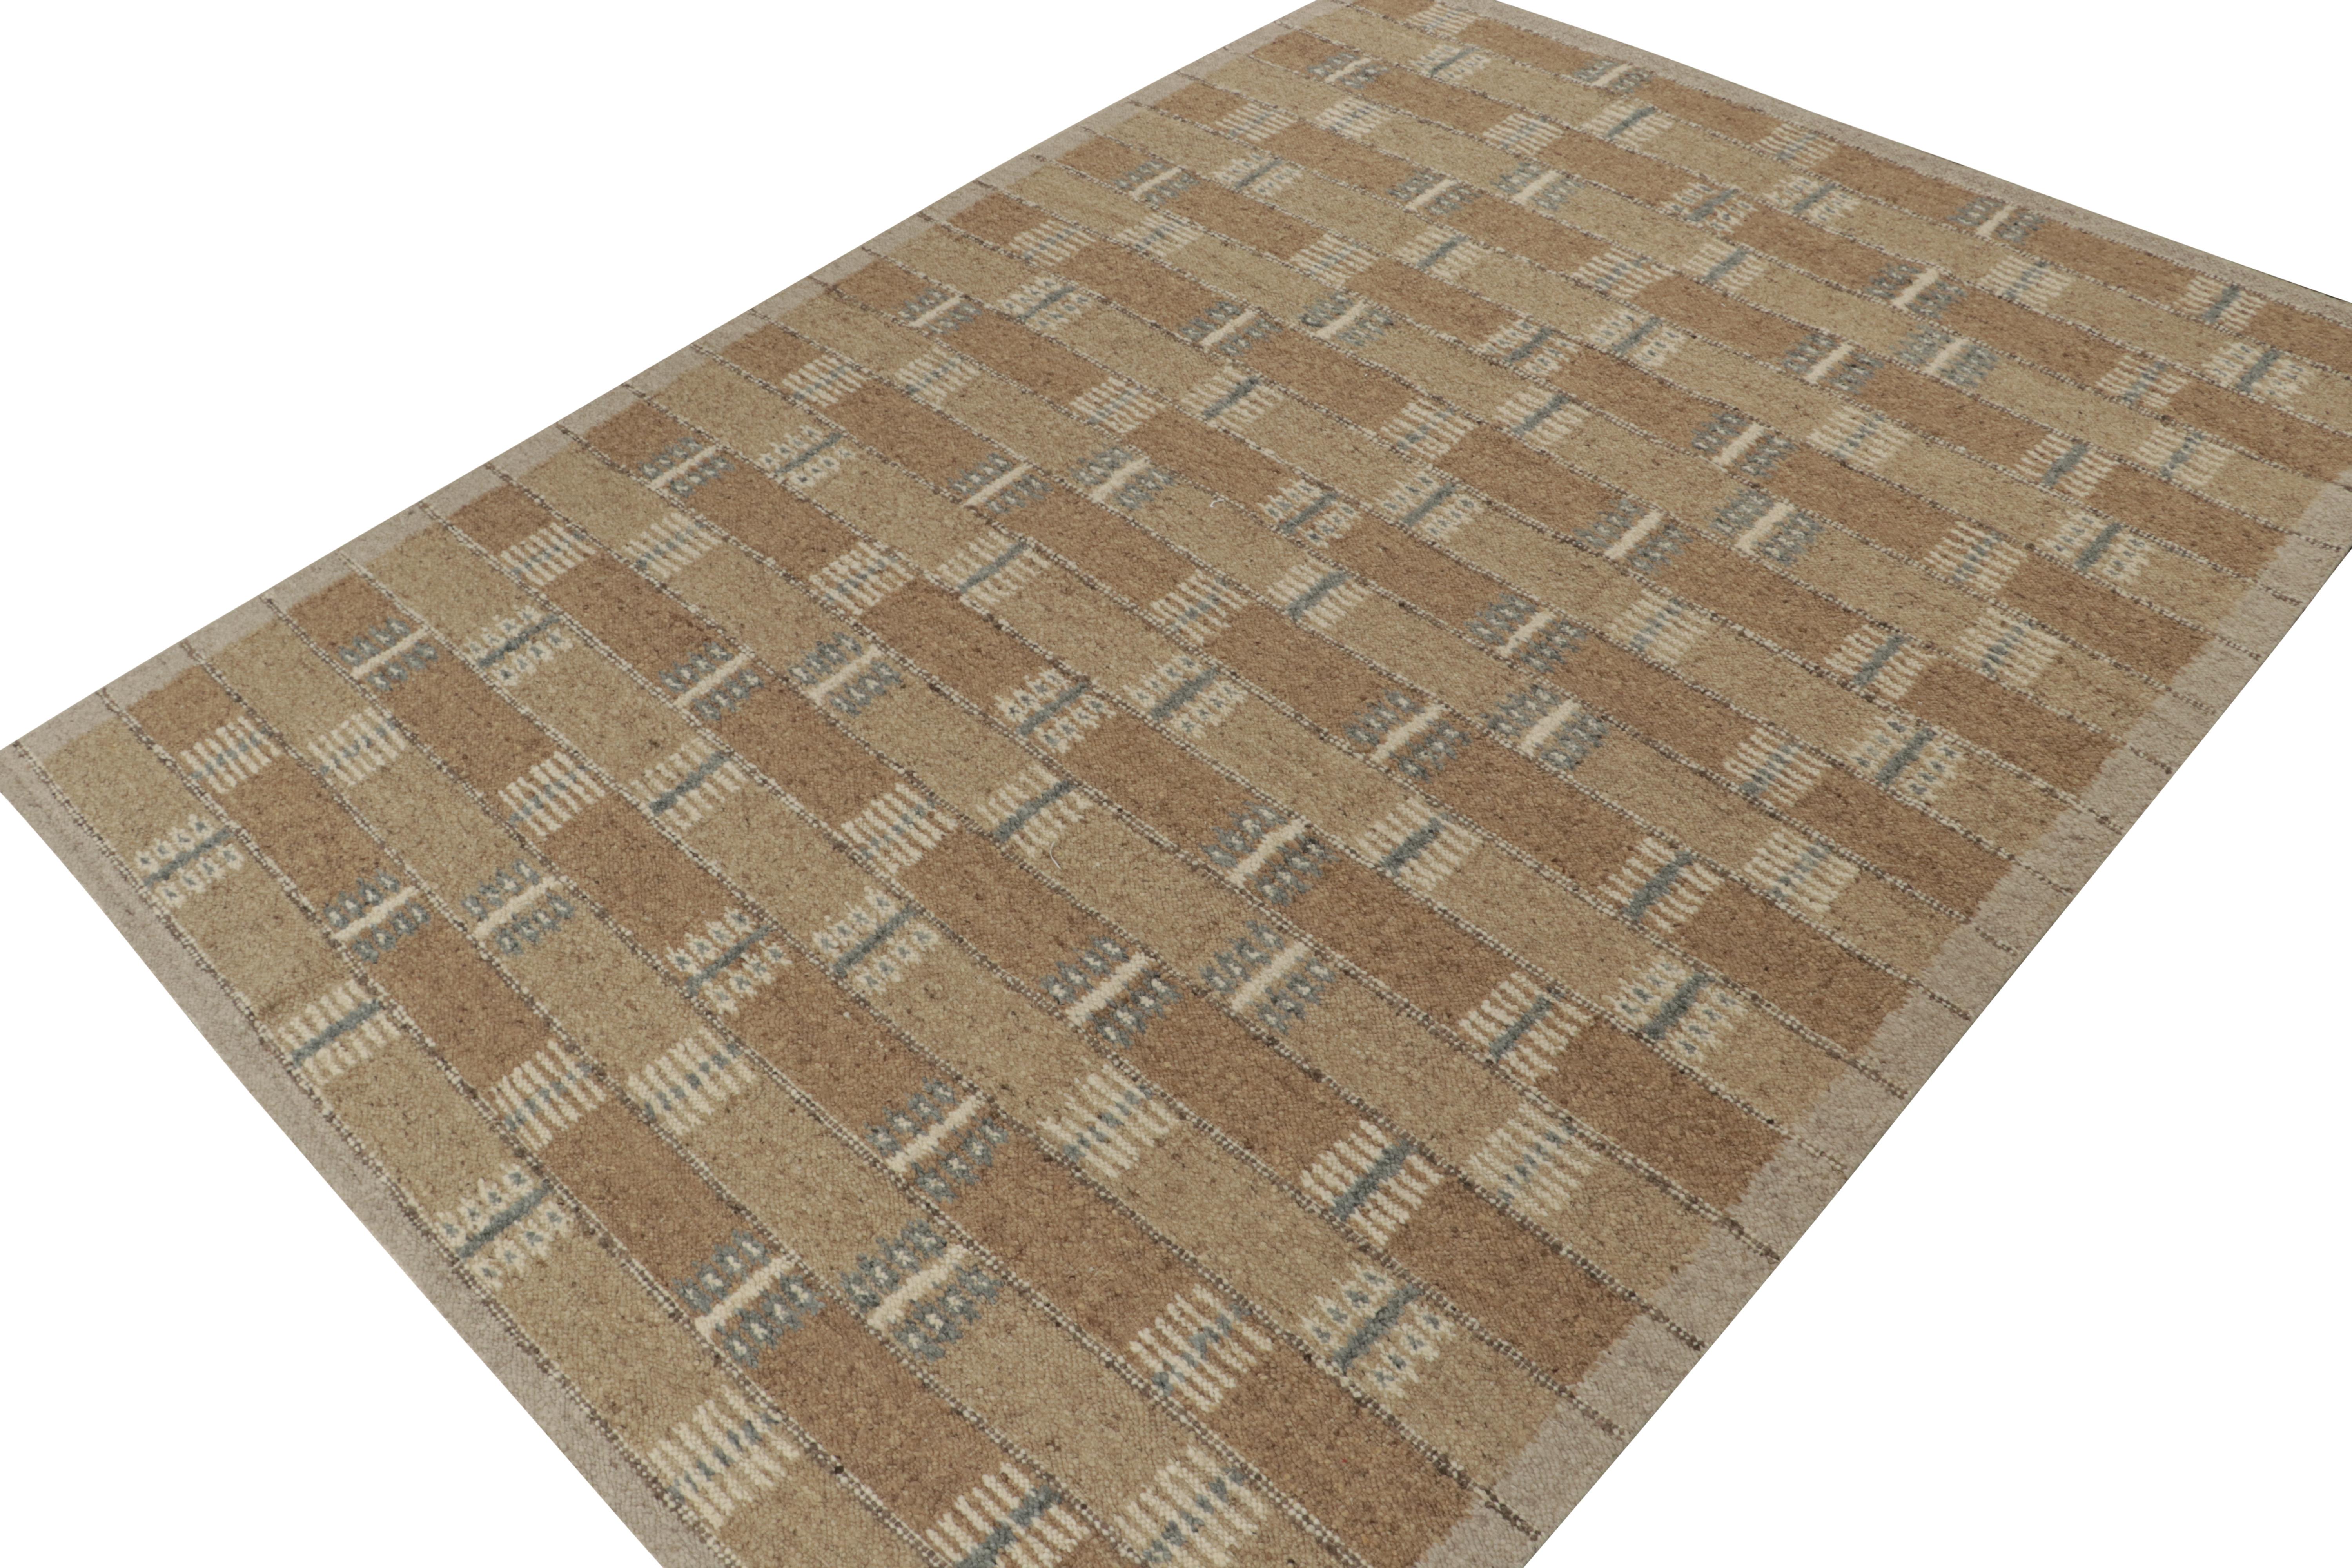 Ein eleganter 10x14 Kelim-Teppich im schwedischen Stil aus der neuen Textur unserer preisgekrönten skandinavischen Flachgewebe-Kollektion. Handgewebt aus Wolle und Baumwolle. 

Weiter zum Design: 

Unser Flachgewebe 